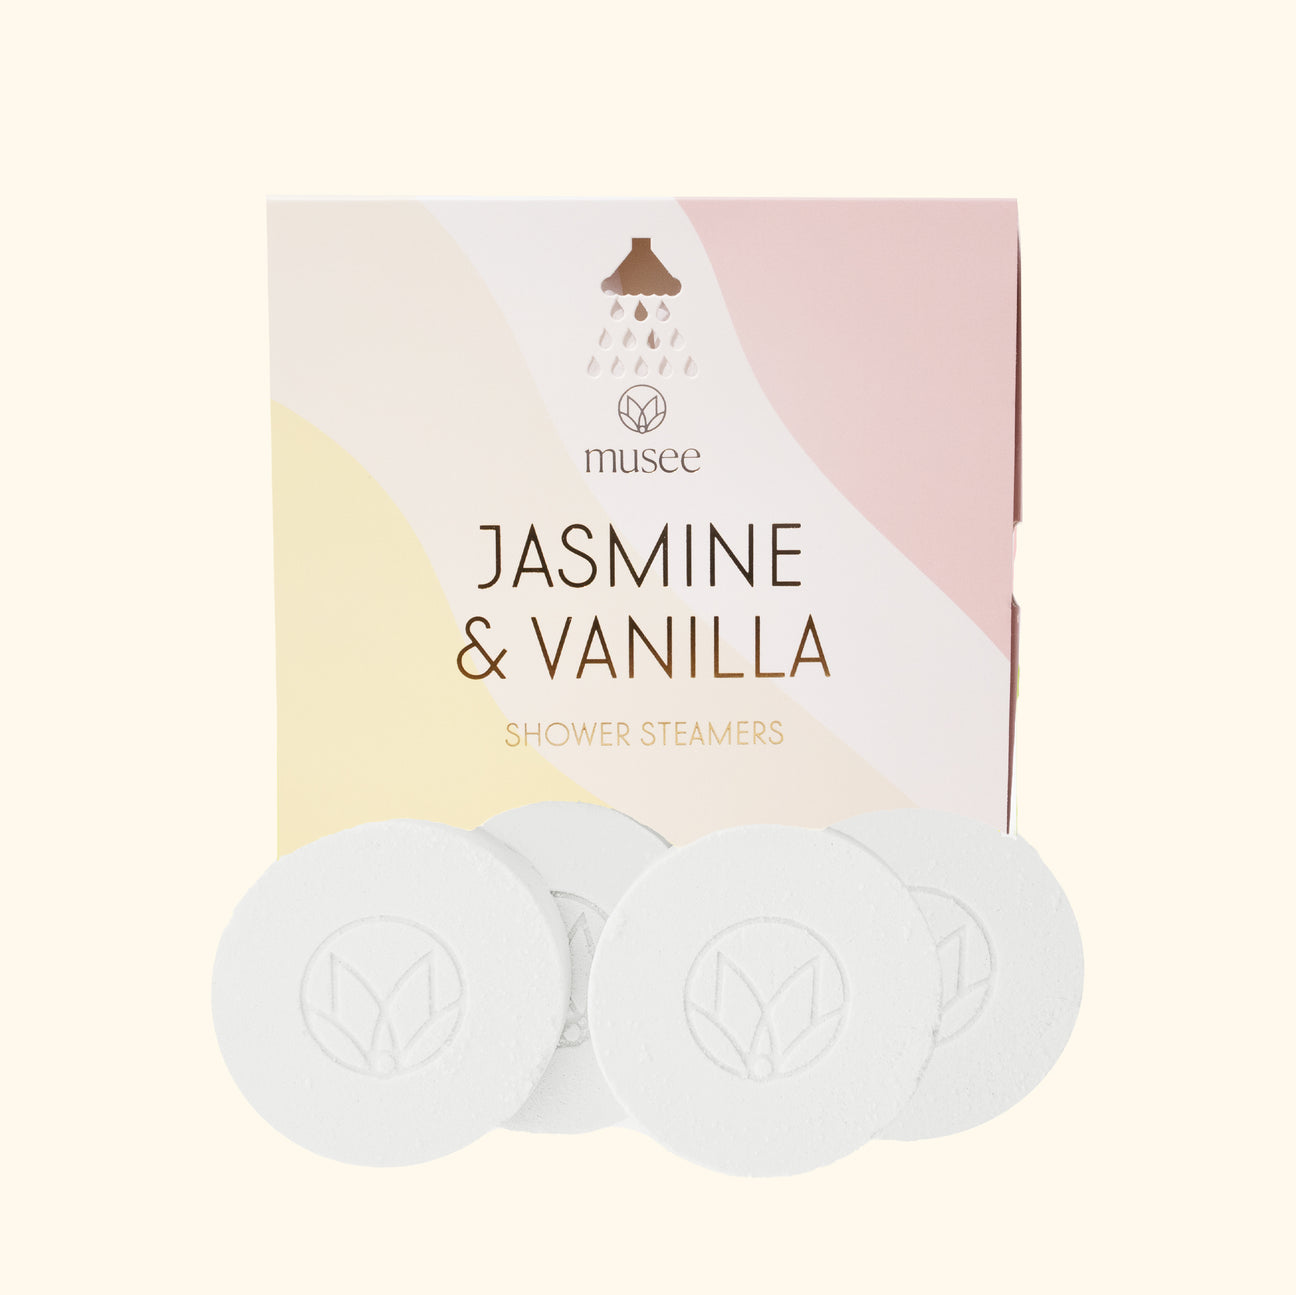 JASMINE AND VANILLA SHOWER STEAMERS